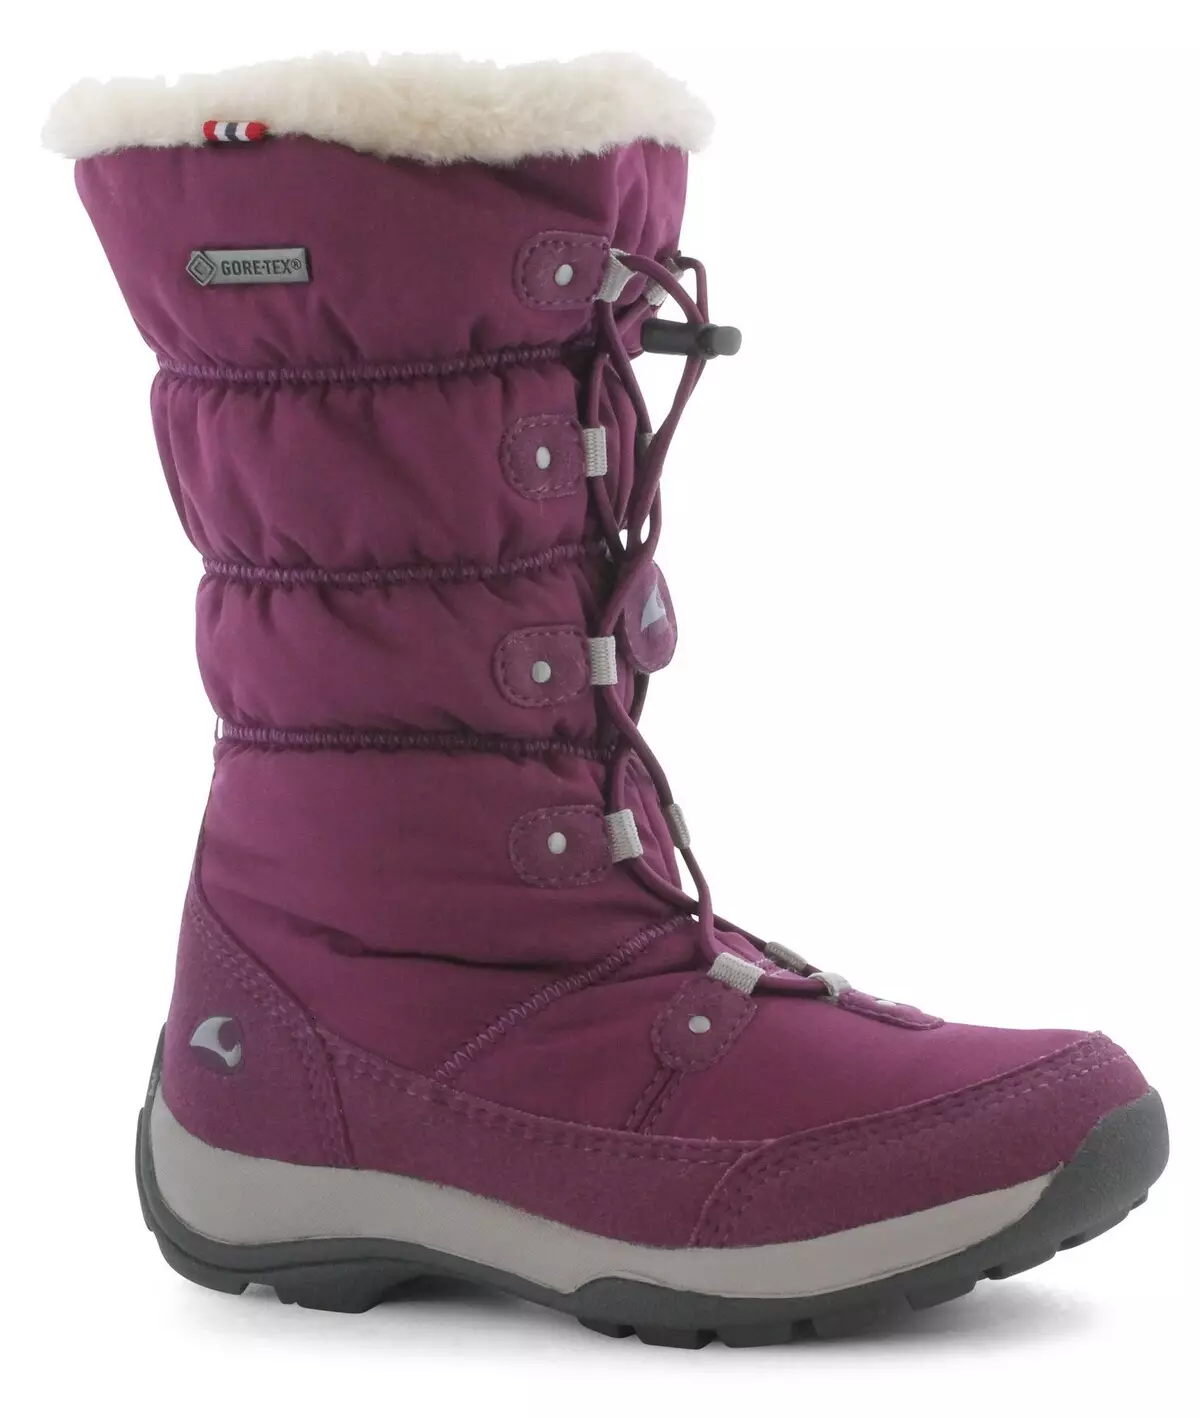 Wikigi Boots (73 լուսանկար). Ձմեռային մանկական եւ կանանց պոլիուրեթանային մոդելներ, ծավալային ցանց եւ վիկինգի ակնարկներ 2258_25